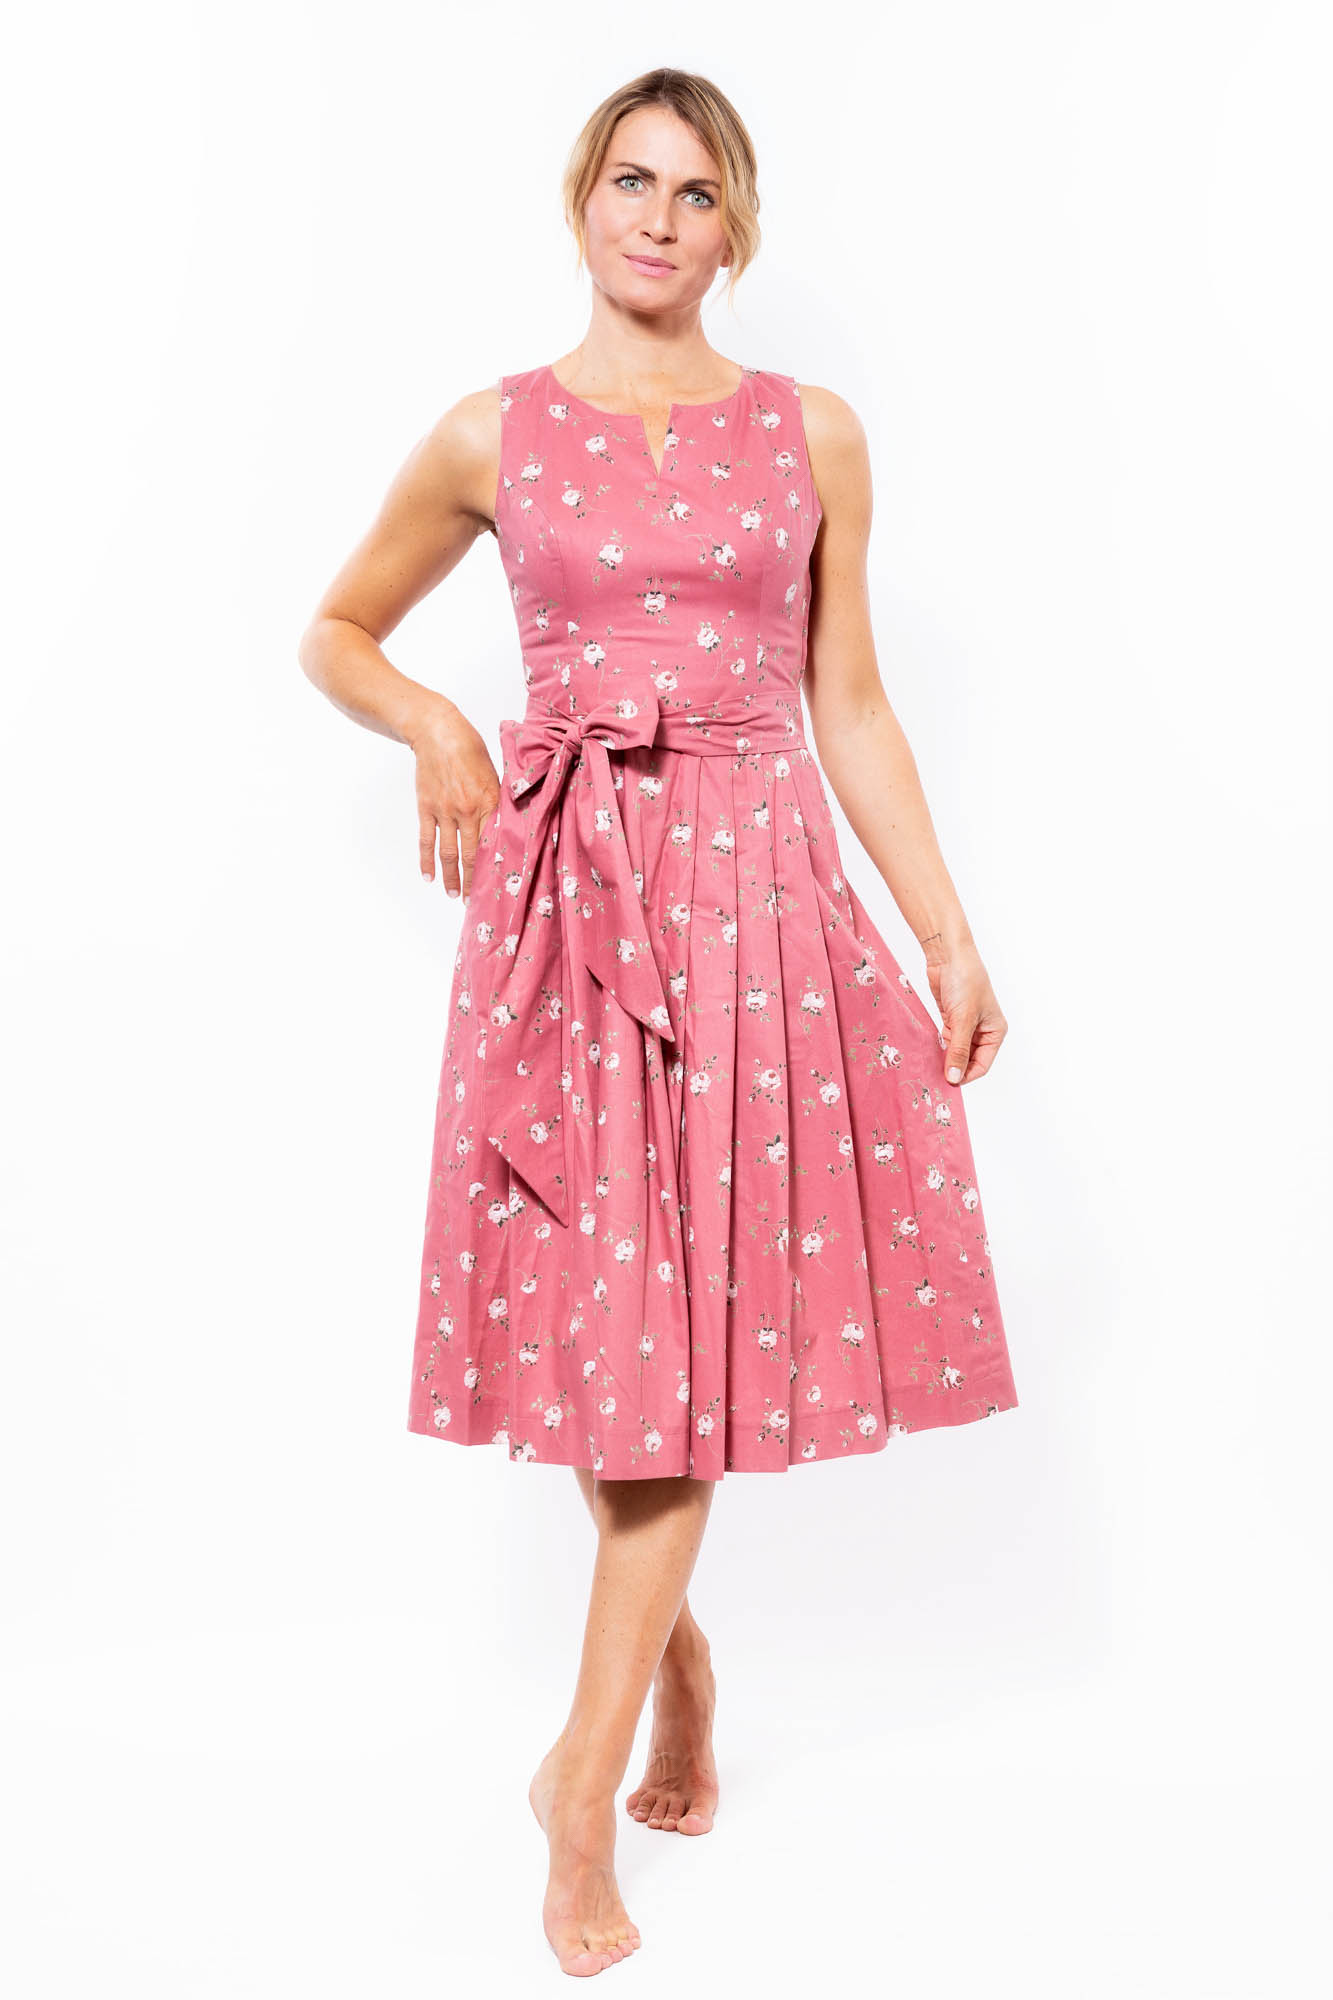 Hiebaum Trachtenkleid Kleid rosé geblümt